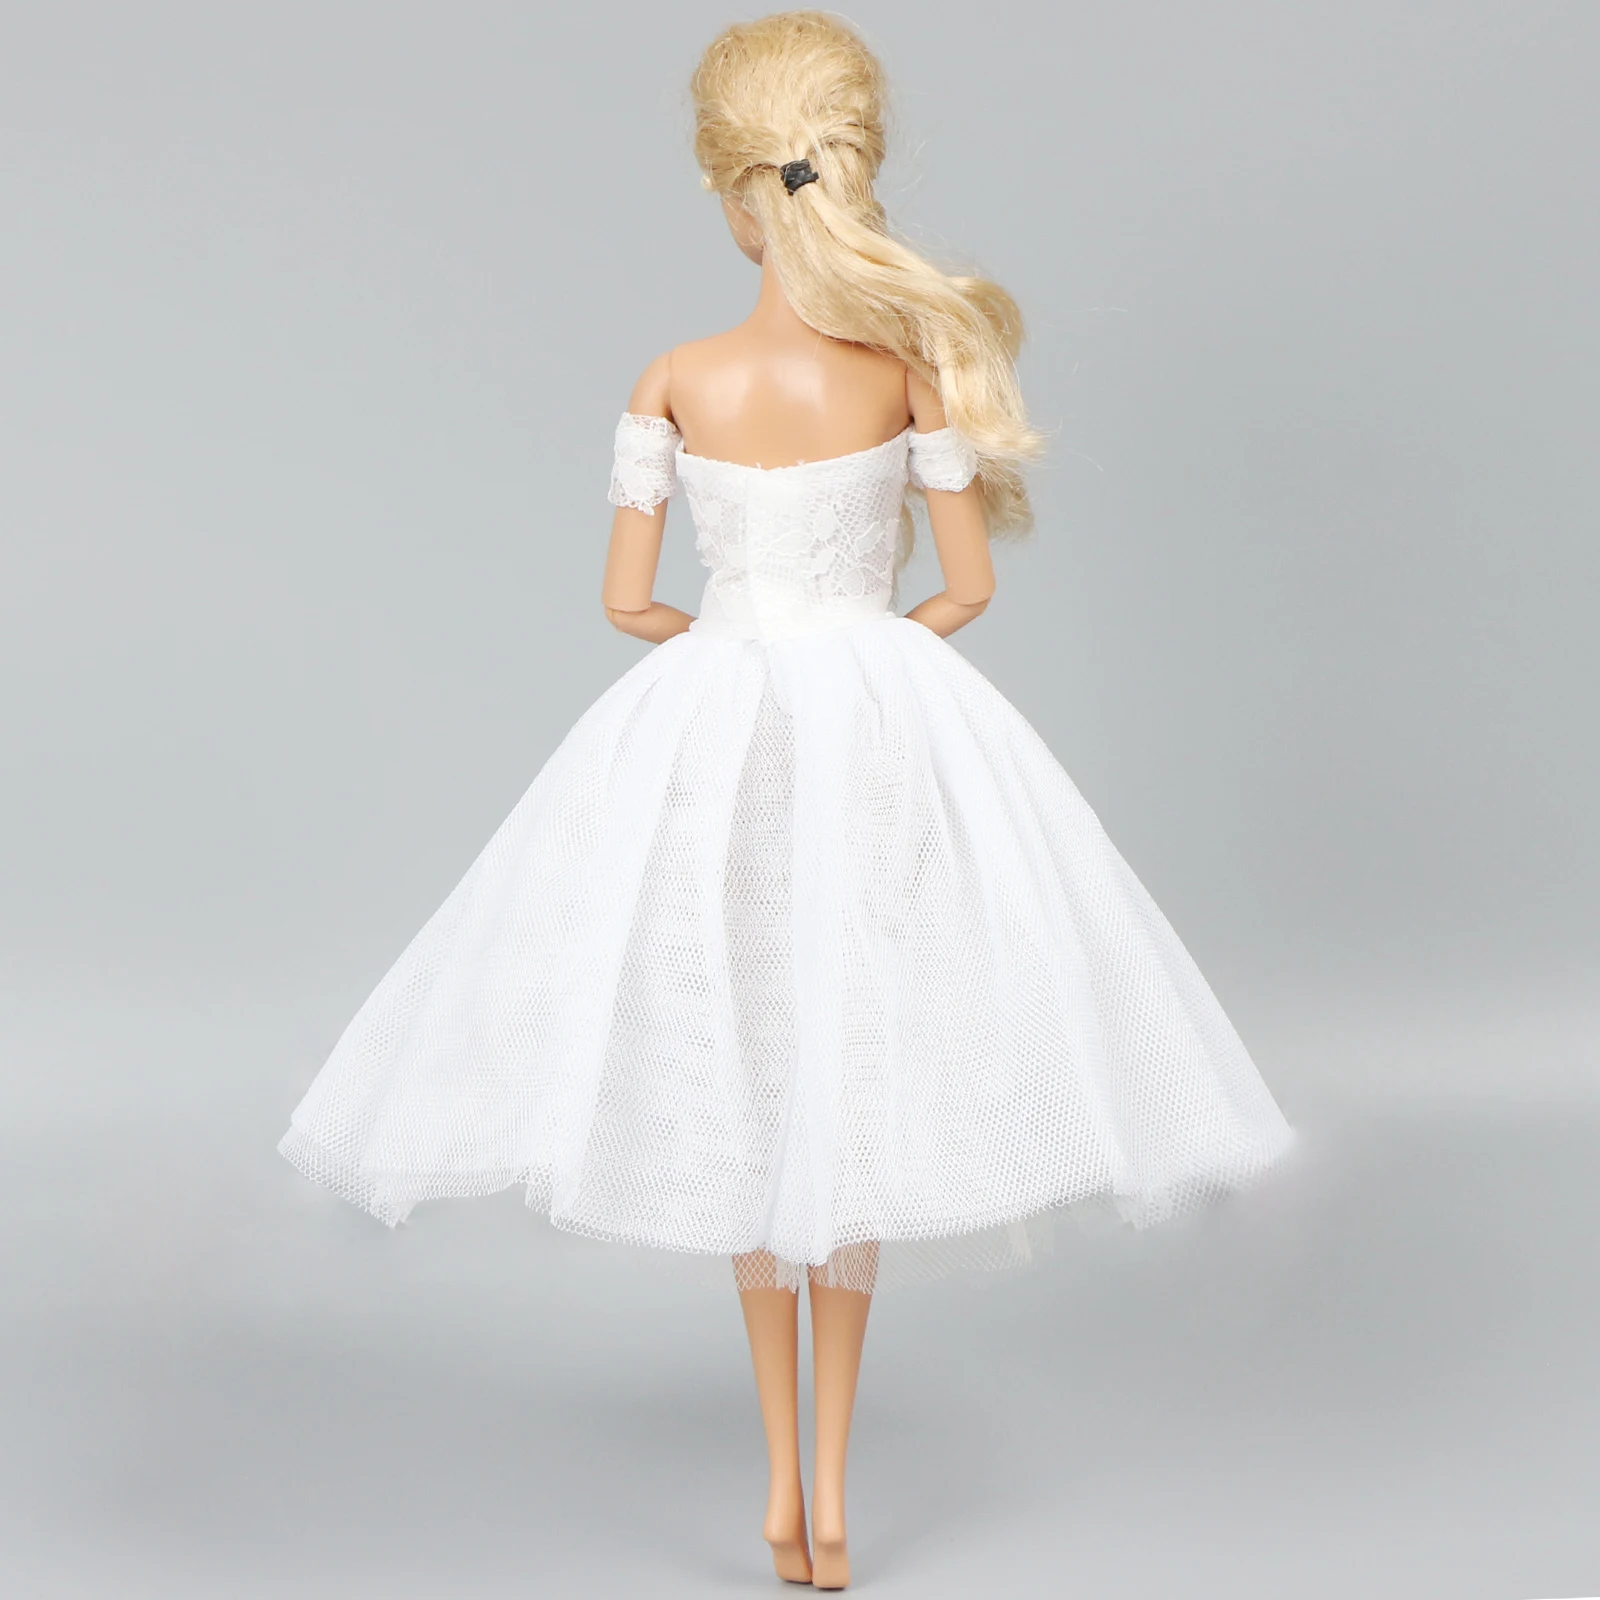 Модное платье для куклы ручной работы, платье для куклы Барби, одежда для свадебной вечеринки, белое кружевное платье, аксессуары для кукольной одежды, детская игрушка